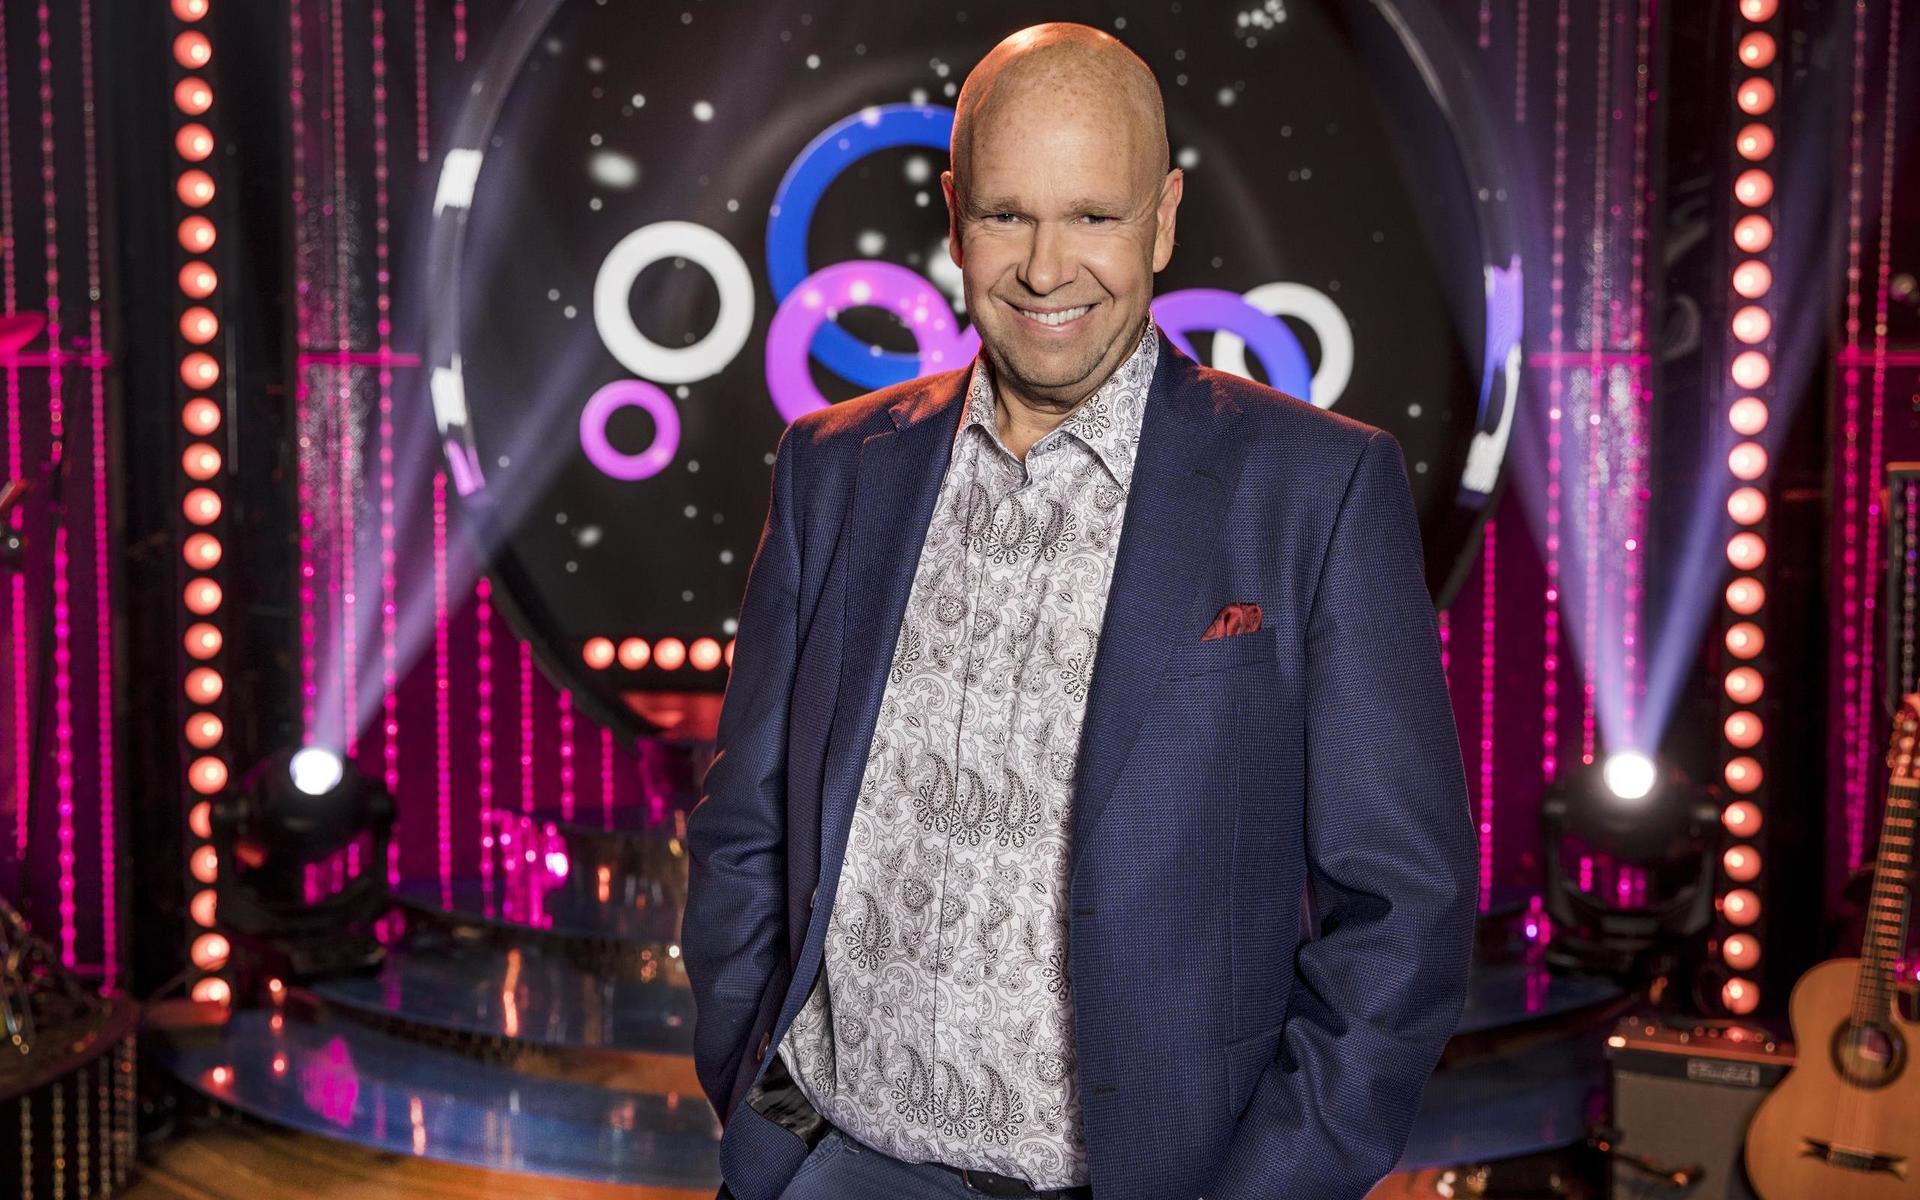 Programledaren och musikern Lasse Kronér, känd från bland annat SVT:s populära underhållningsprogram Doobidoo, kommer att hålla i välgörenhetsauktionen i Stenungsund i september.